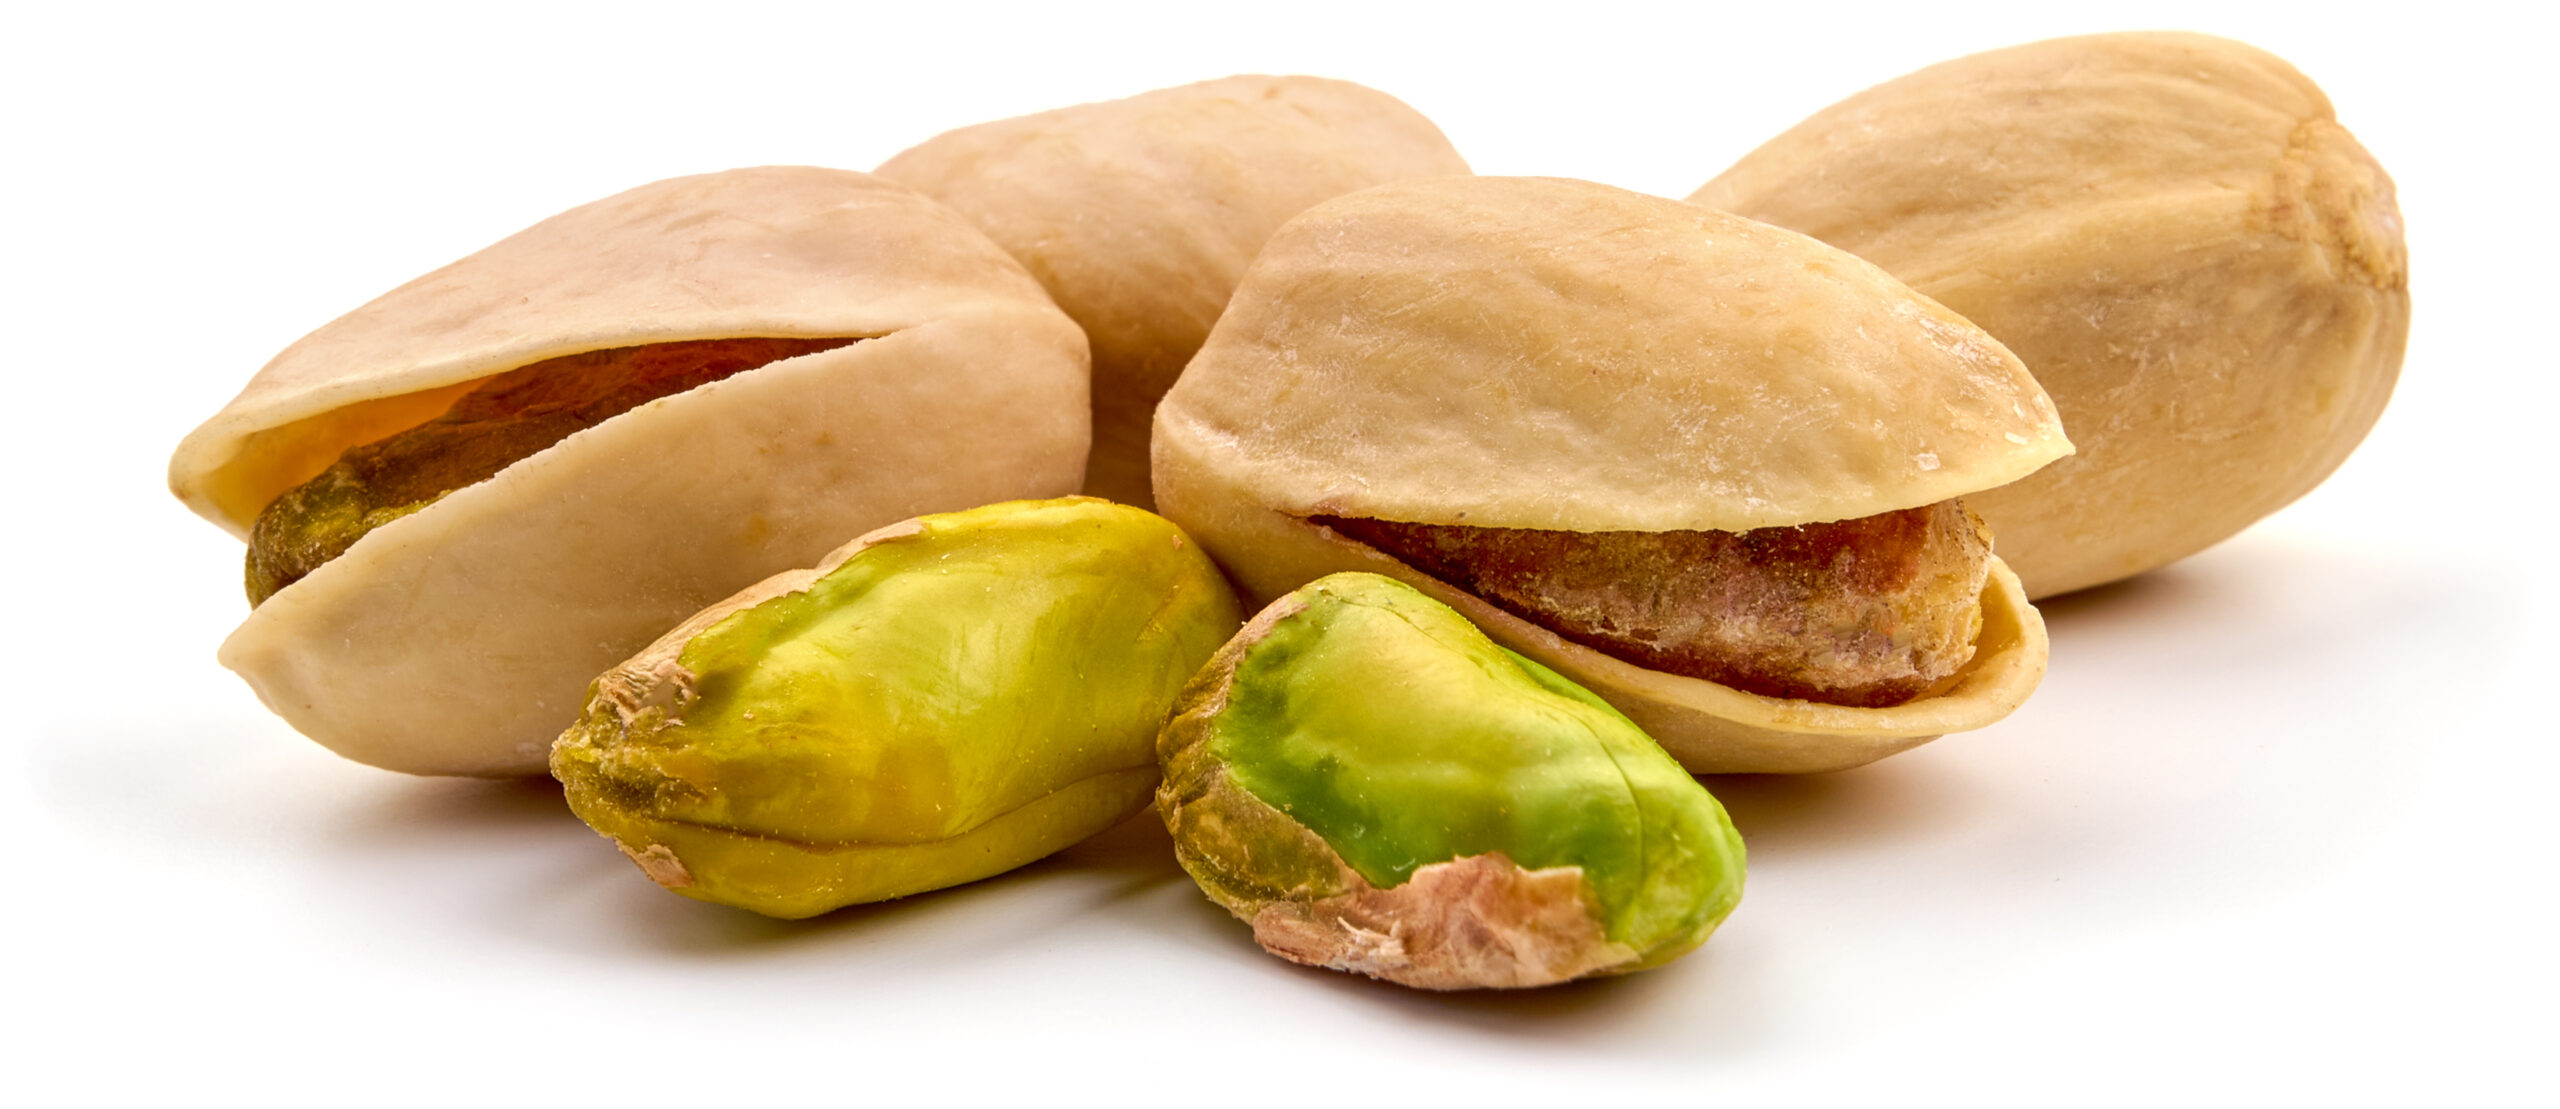 pistachio shells